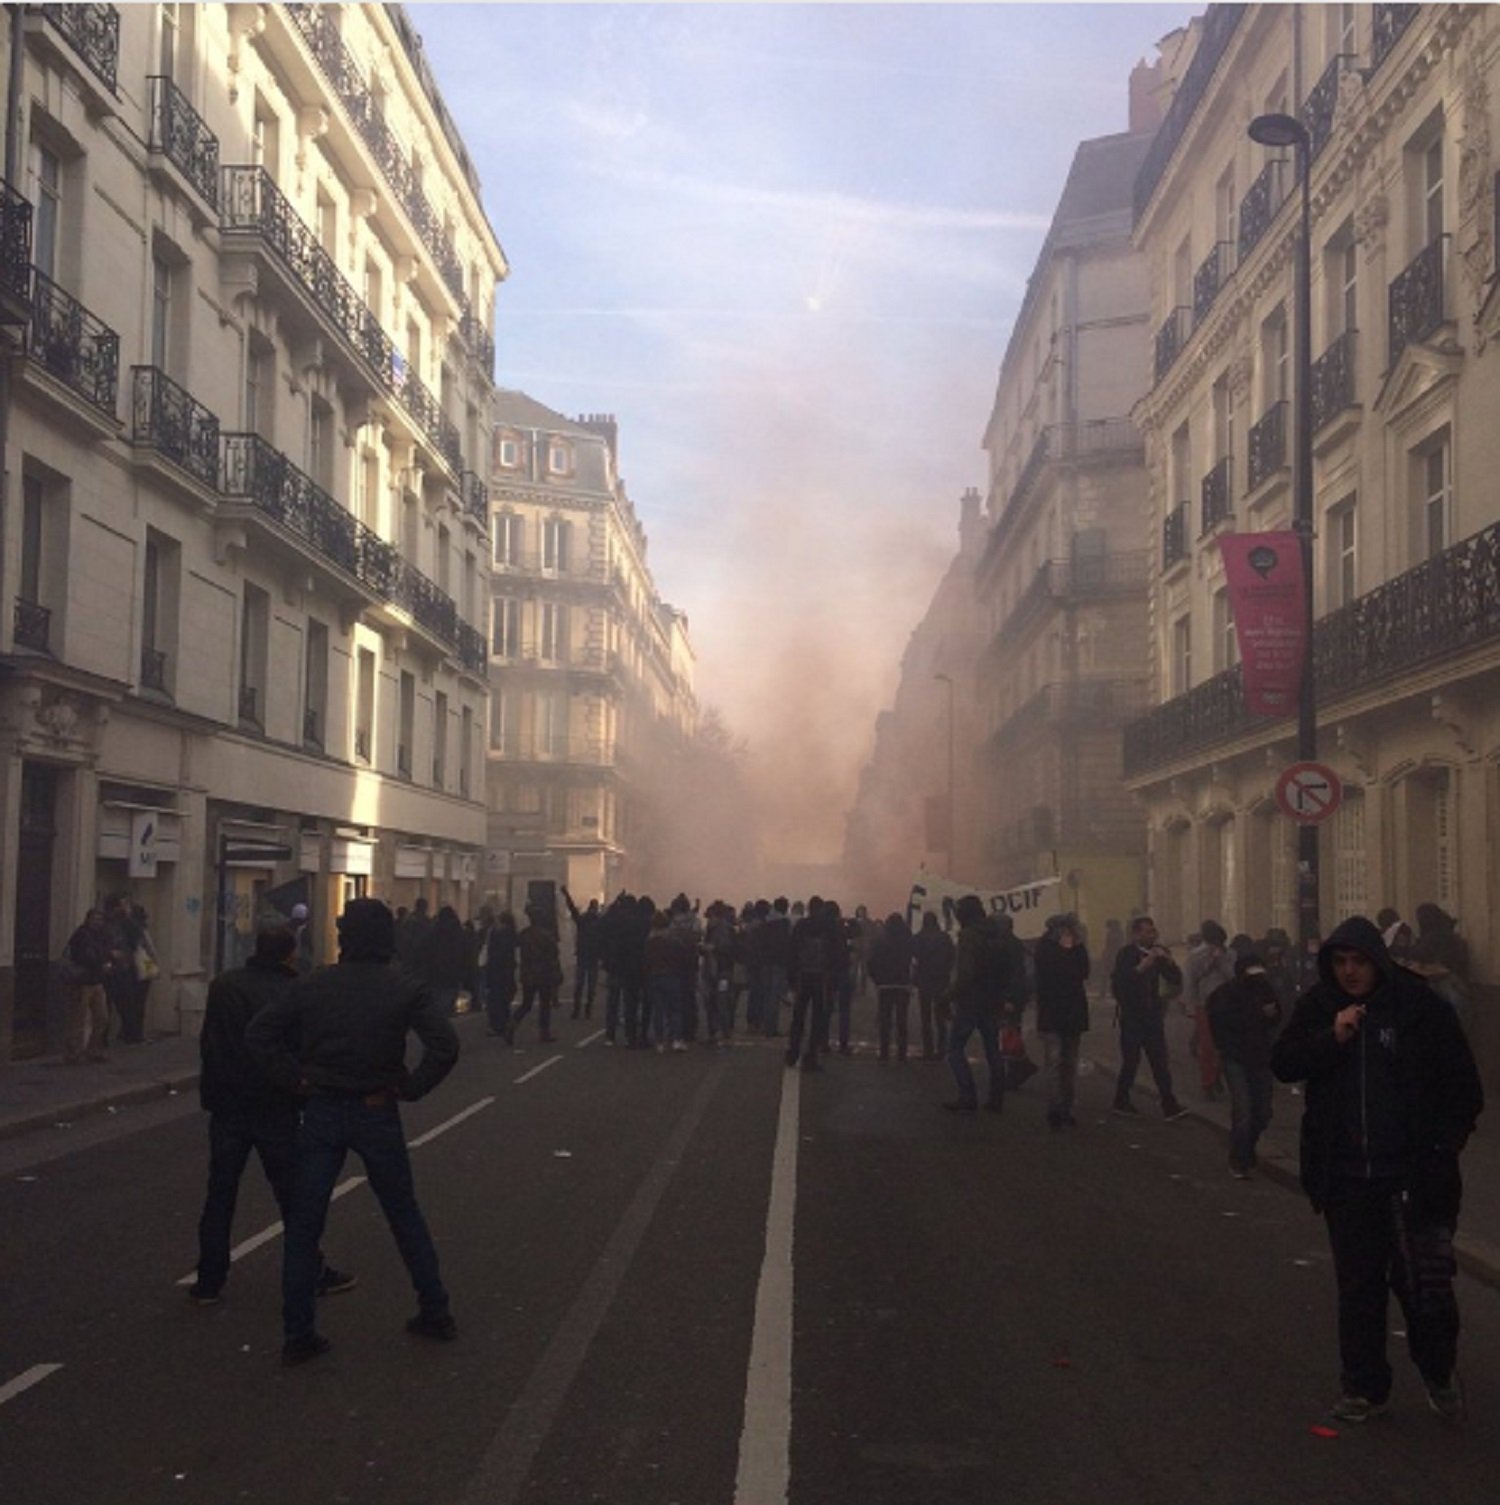 11 policías han sido heridos durante una protesta en Nantes contra Le Pen